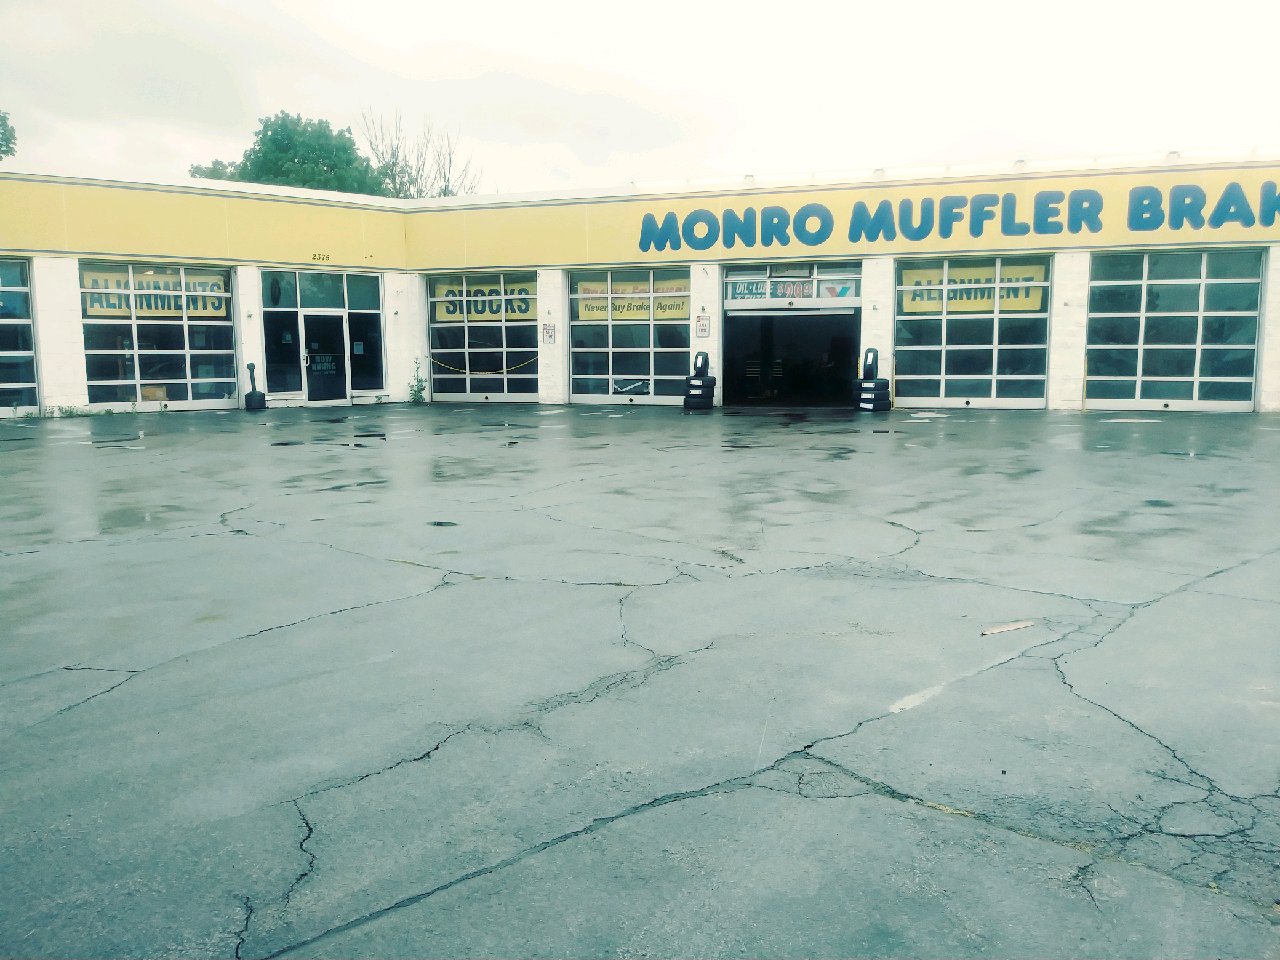 Monro Auto Service And Tire Centers